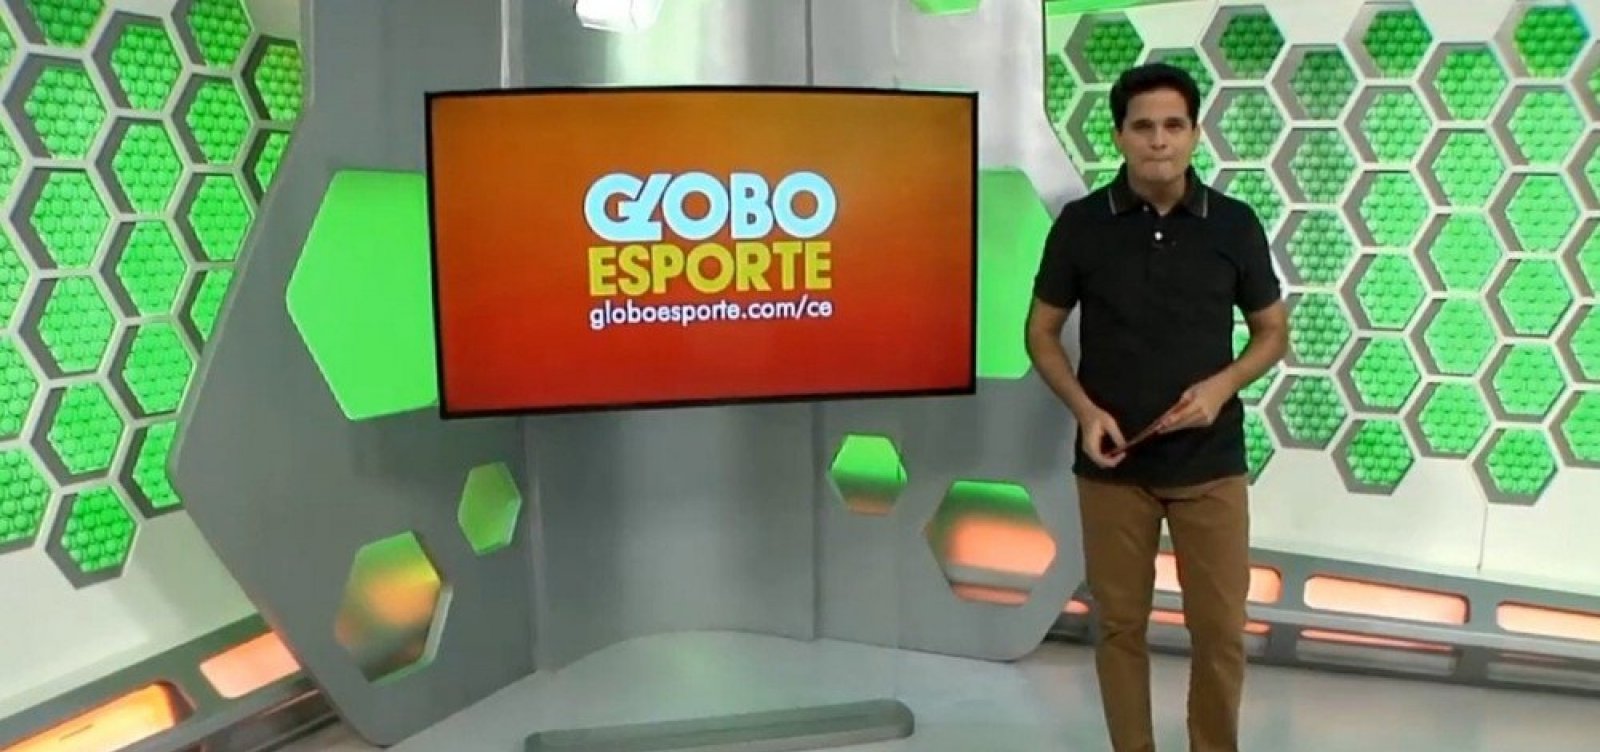 Apresentador do Globo Esporte no Ceará pede demissão ao vivo: 'Não abro mão  do respeito nem da dignidade' - Metro 1